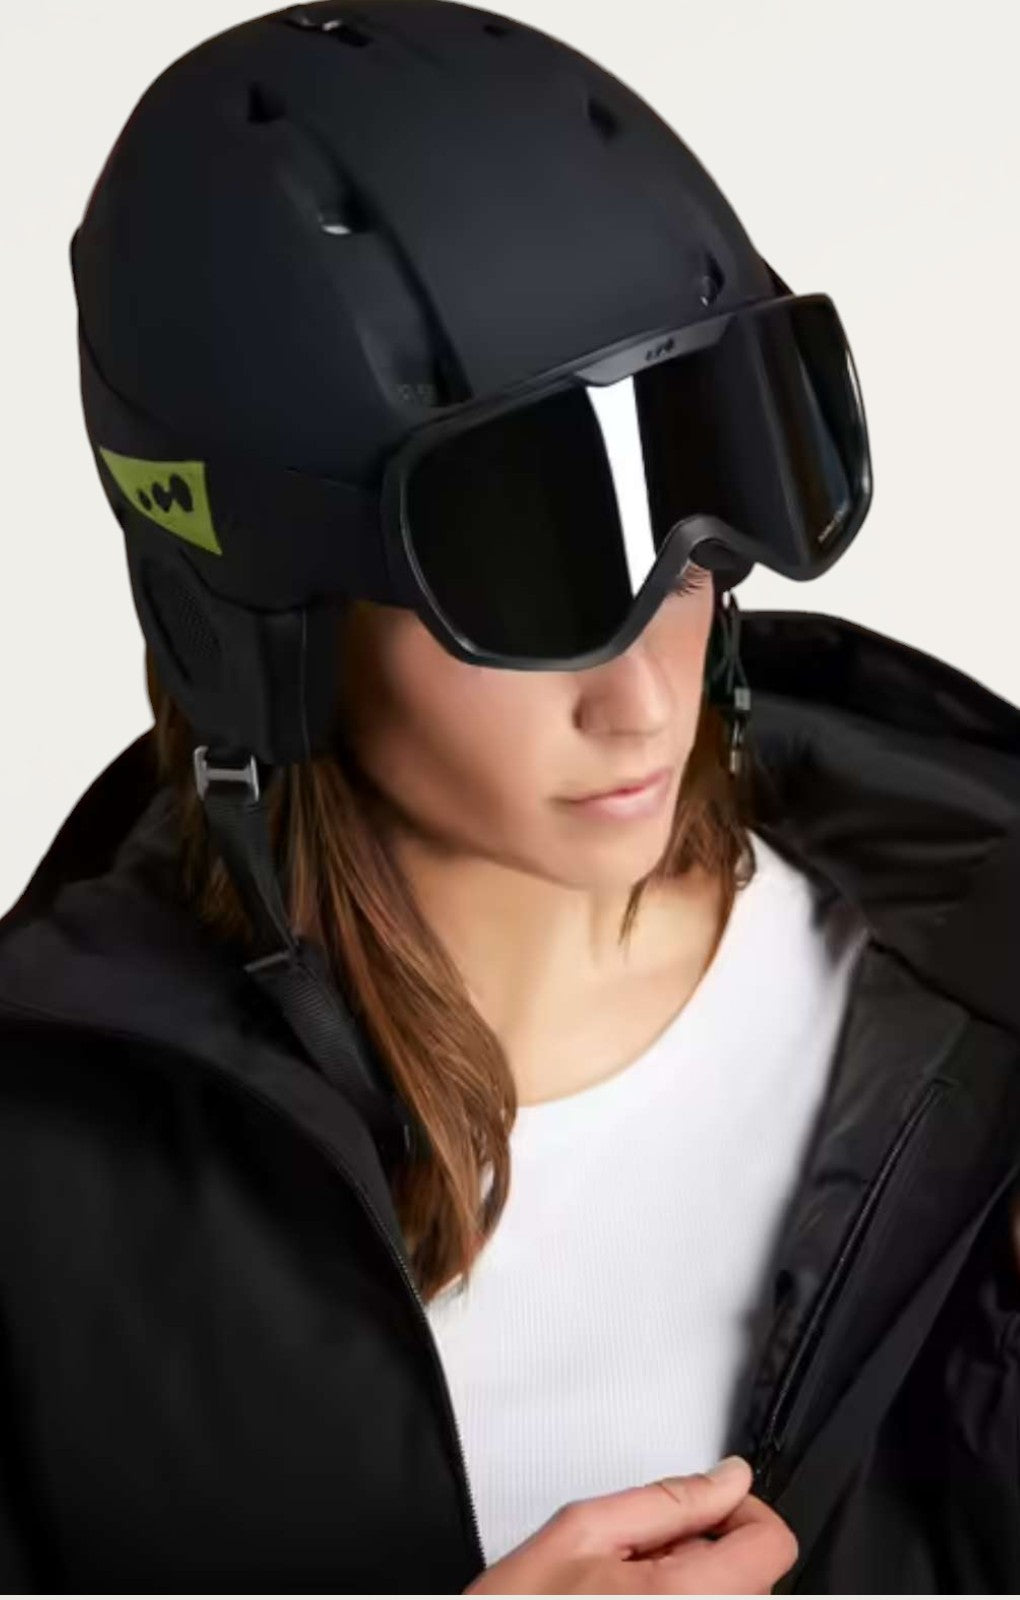 Decathlon Women's Black Ski Jacket product image